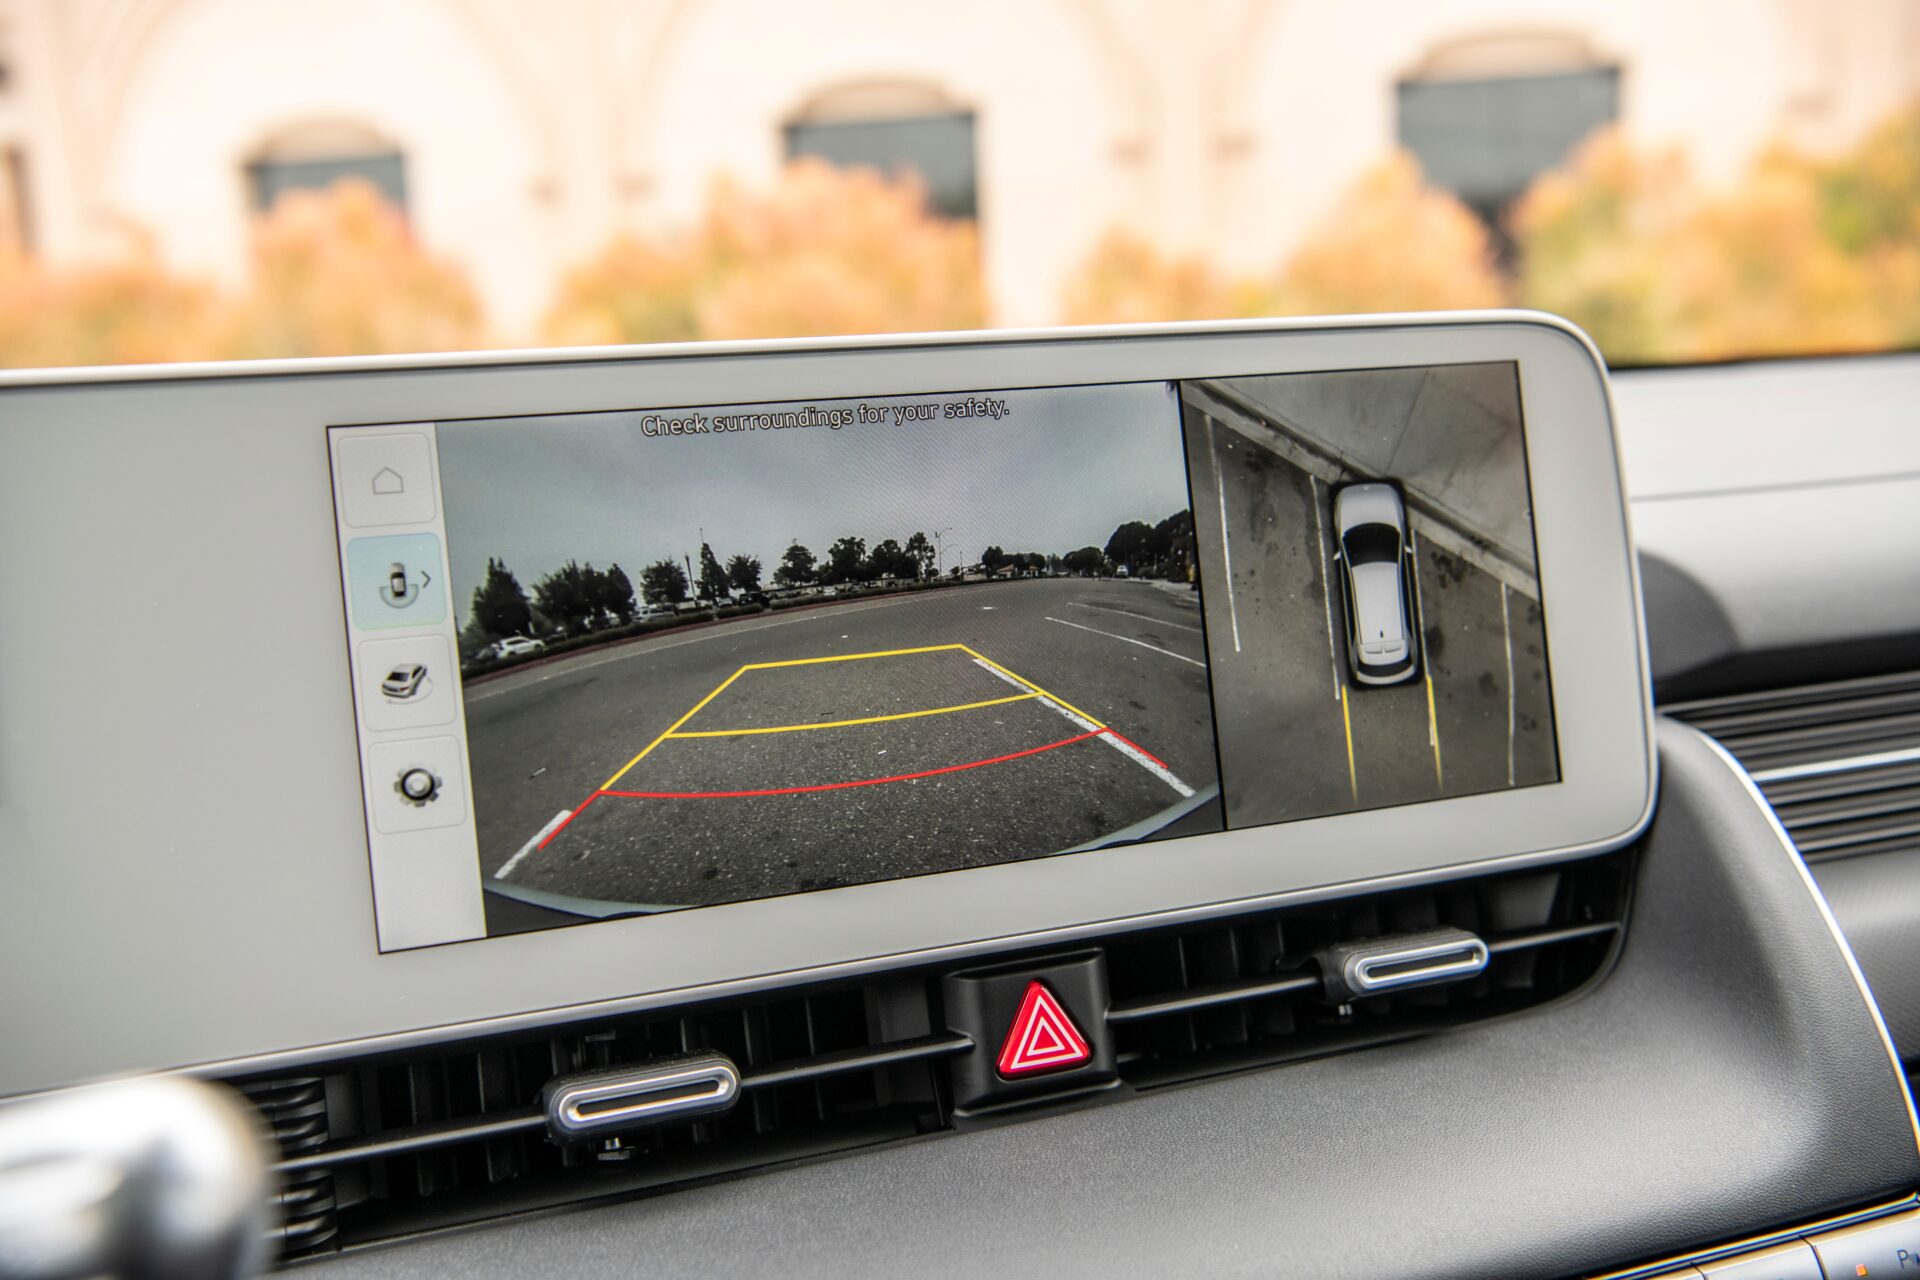 Le Ioniq 5 ne déçoit pas avec ses systèmes de sécurité avancés, son écran tactile de 12,3 pouces intégré au tableau de bord, et sa compatibilité avec Apple CarPlay et Android Auto.